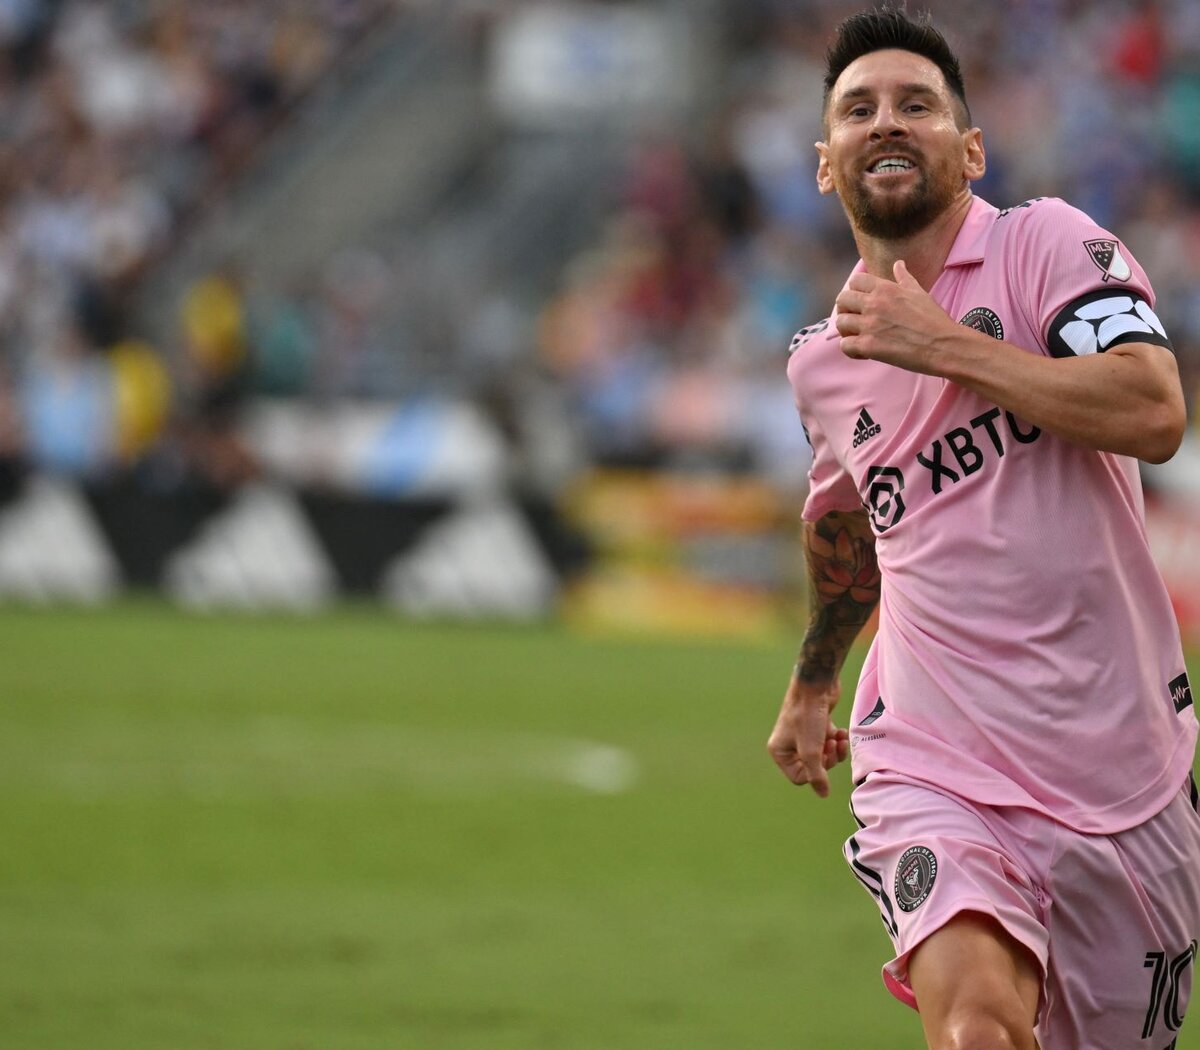 Resumen y resultado del Inter Miami de Messi vs Nashville SC: goles, datos  y más